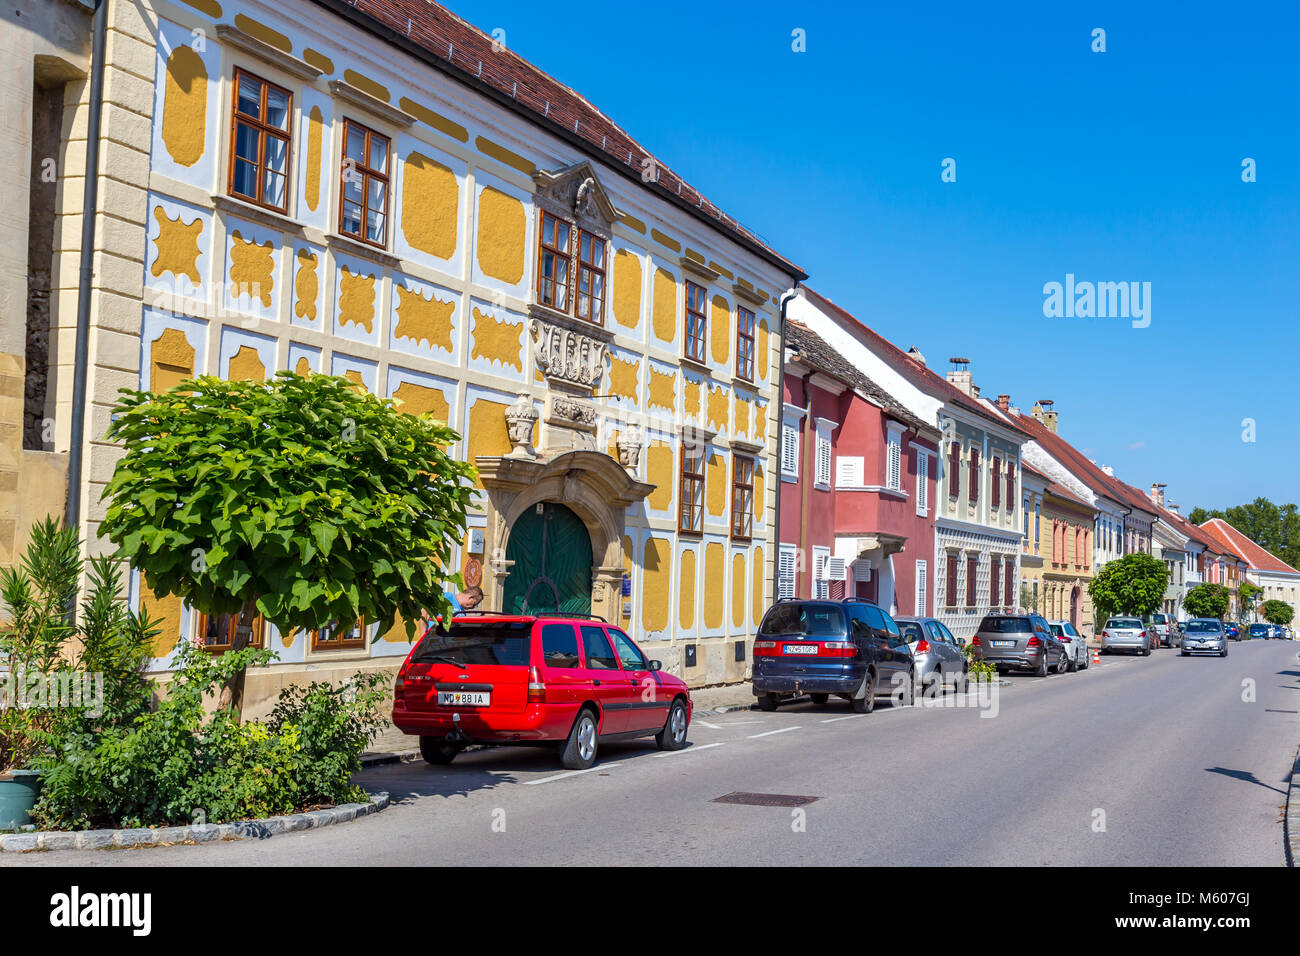 Bel villaggio in Austria, ruggine Foto Stock